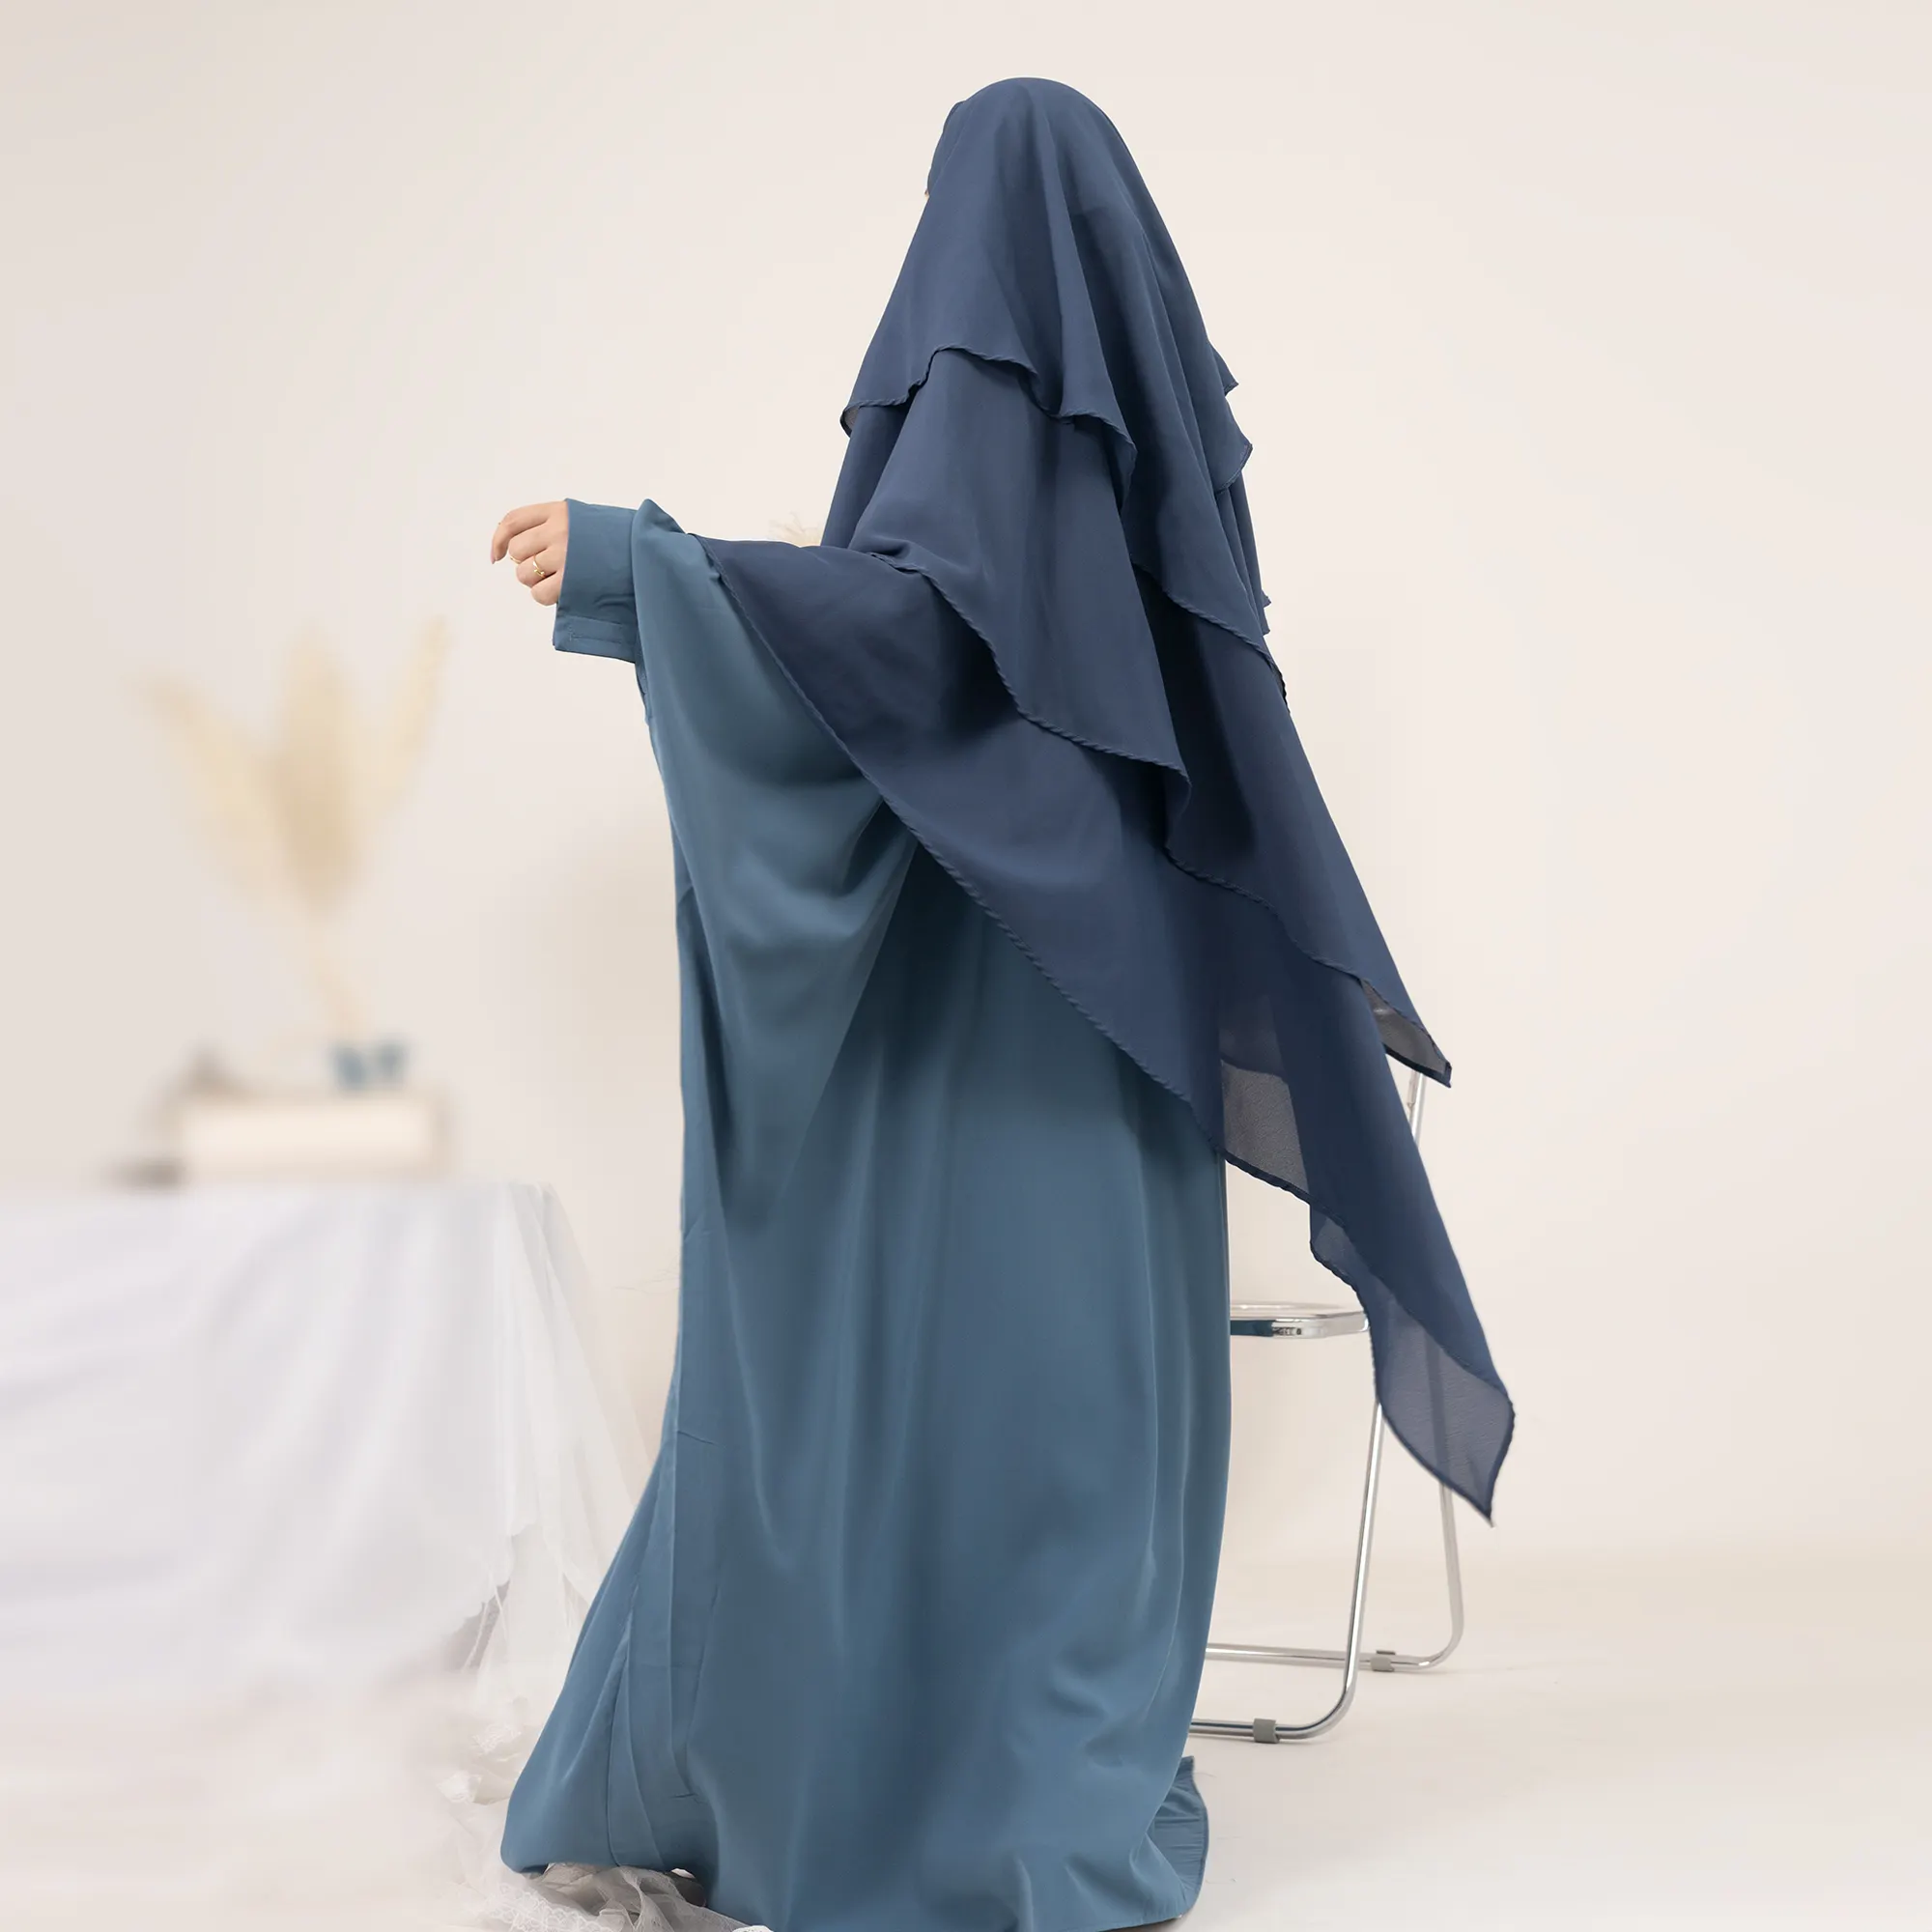 Abbigliamento islamico personalizzato medio oriente Lady Thobe Hijab preghiera manica a pipistrello Rob donne musulmane Abaya per ragazze abaya nero all'ingrosso